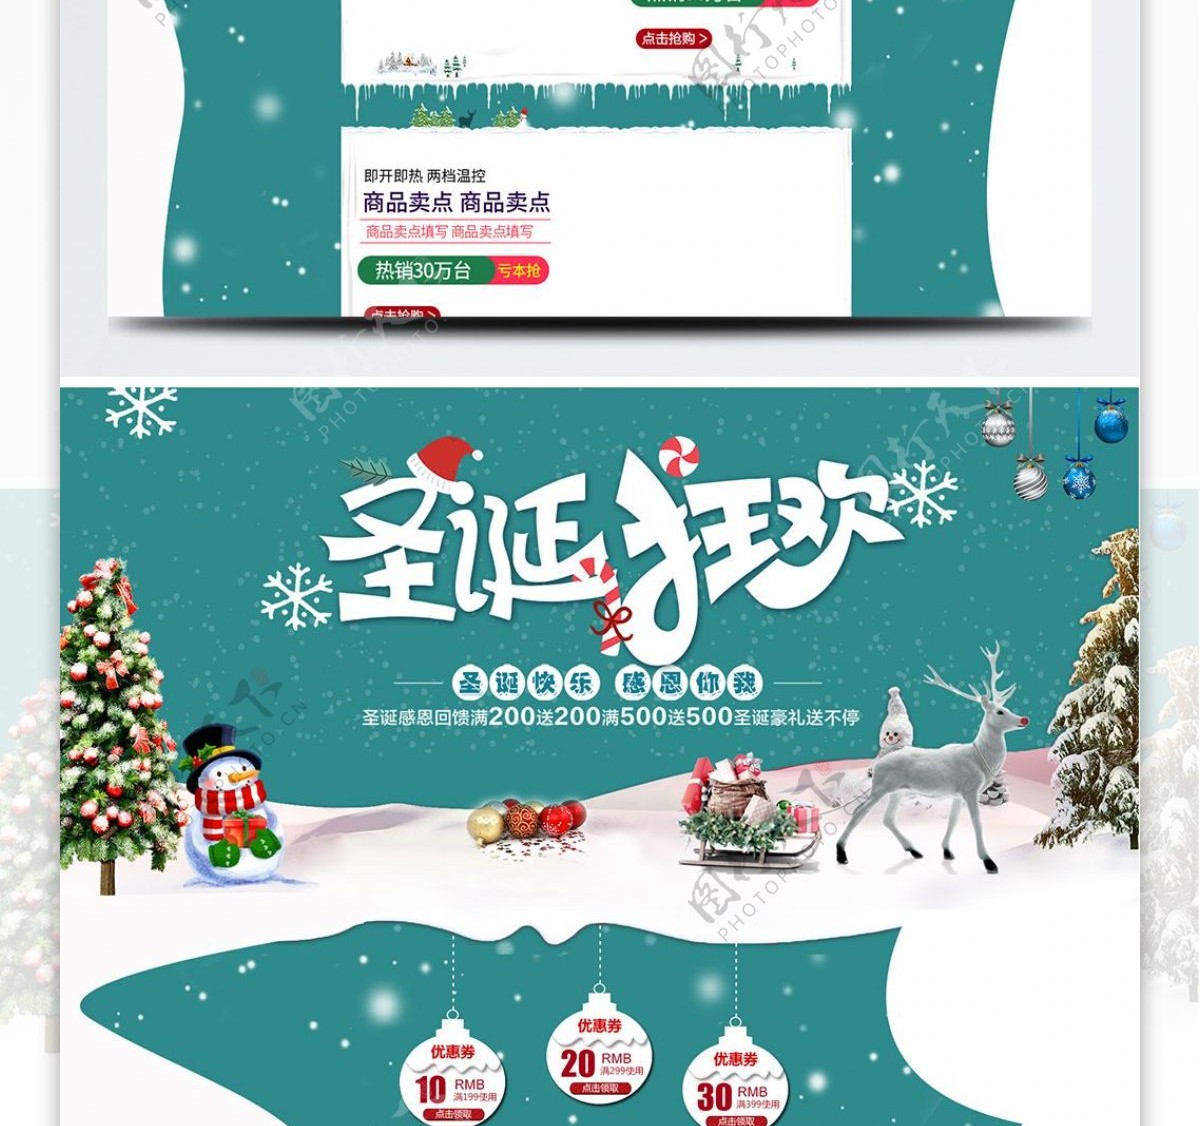 蓝色简约节日气氛圣诞狂欢电商首页模板天猫